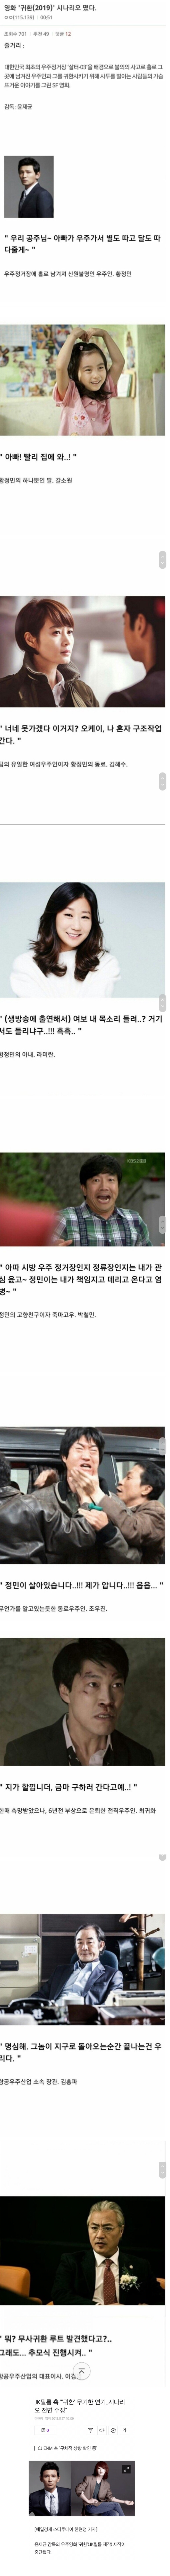 포모스 대본 유출로 엎어진 한국영화 .png